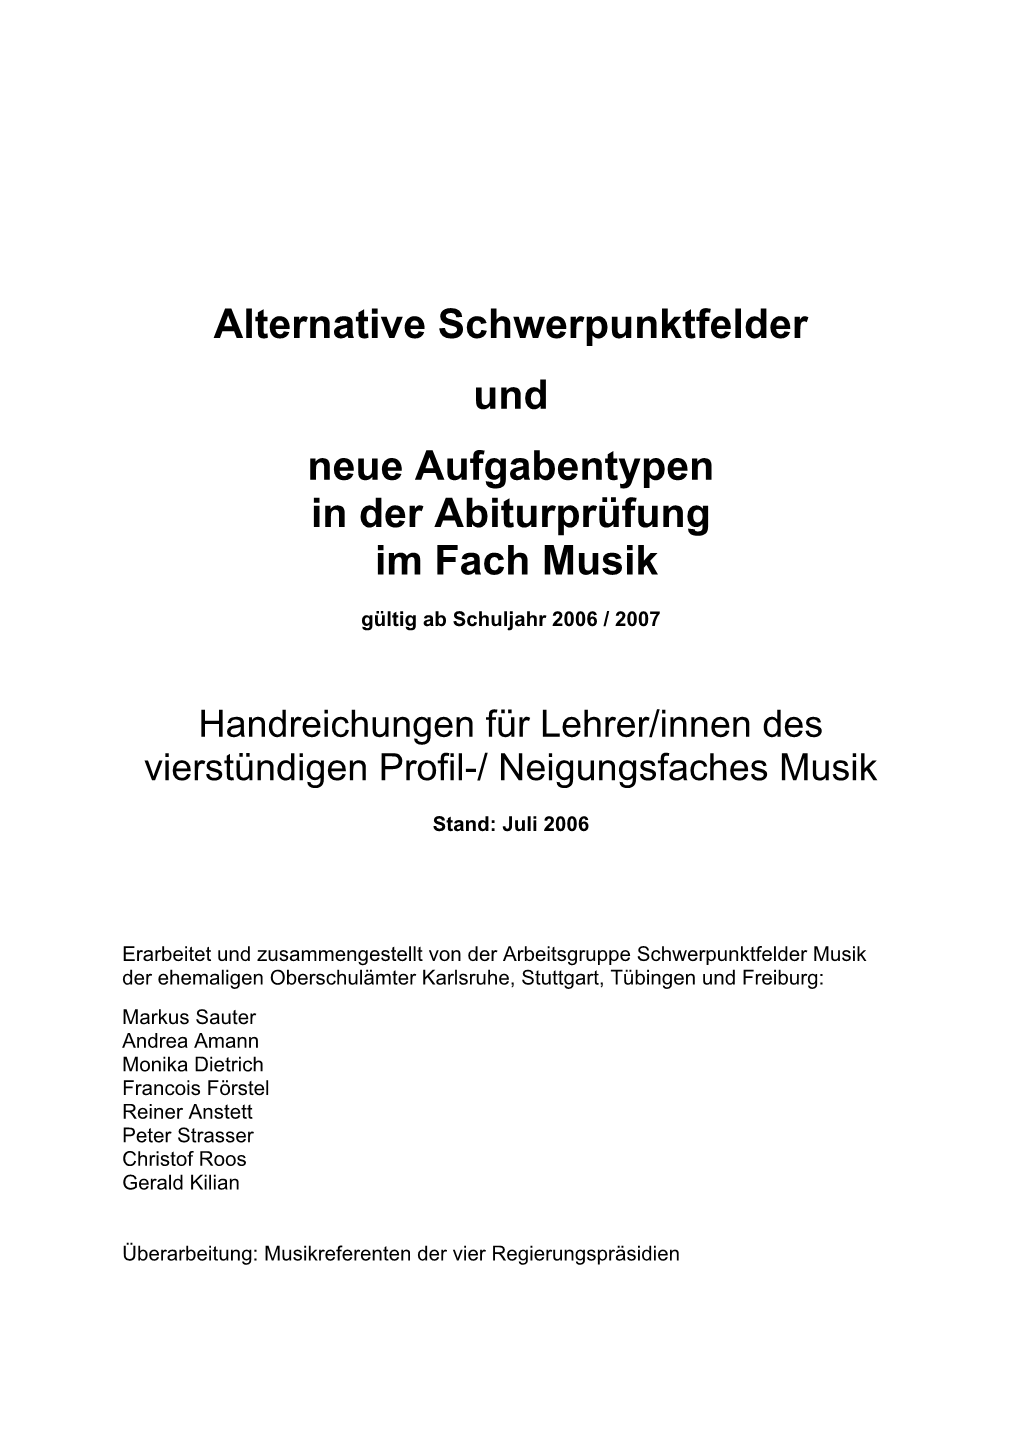 Alternative Schwerpunktfelder Und Neue Aufgabentypen in Der Abiturprüfung Im Fach Musik